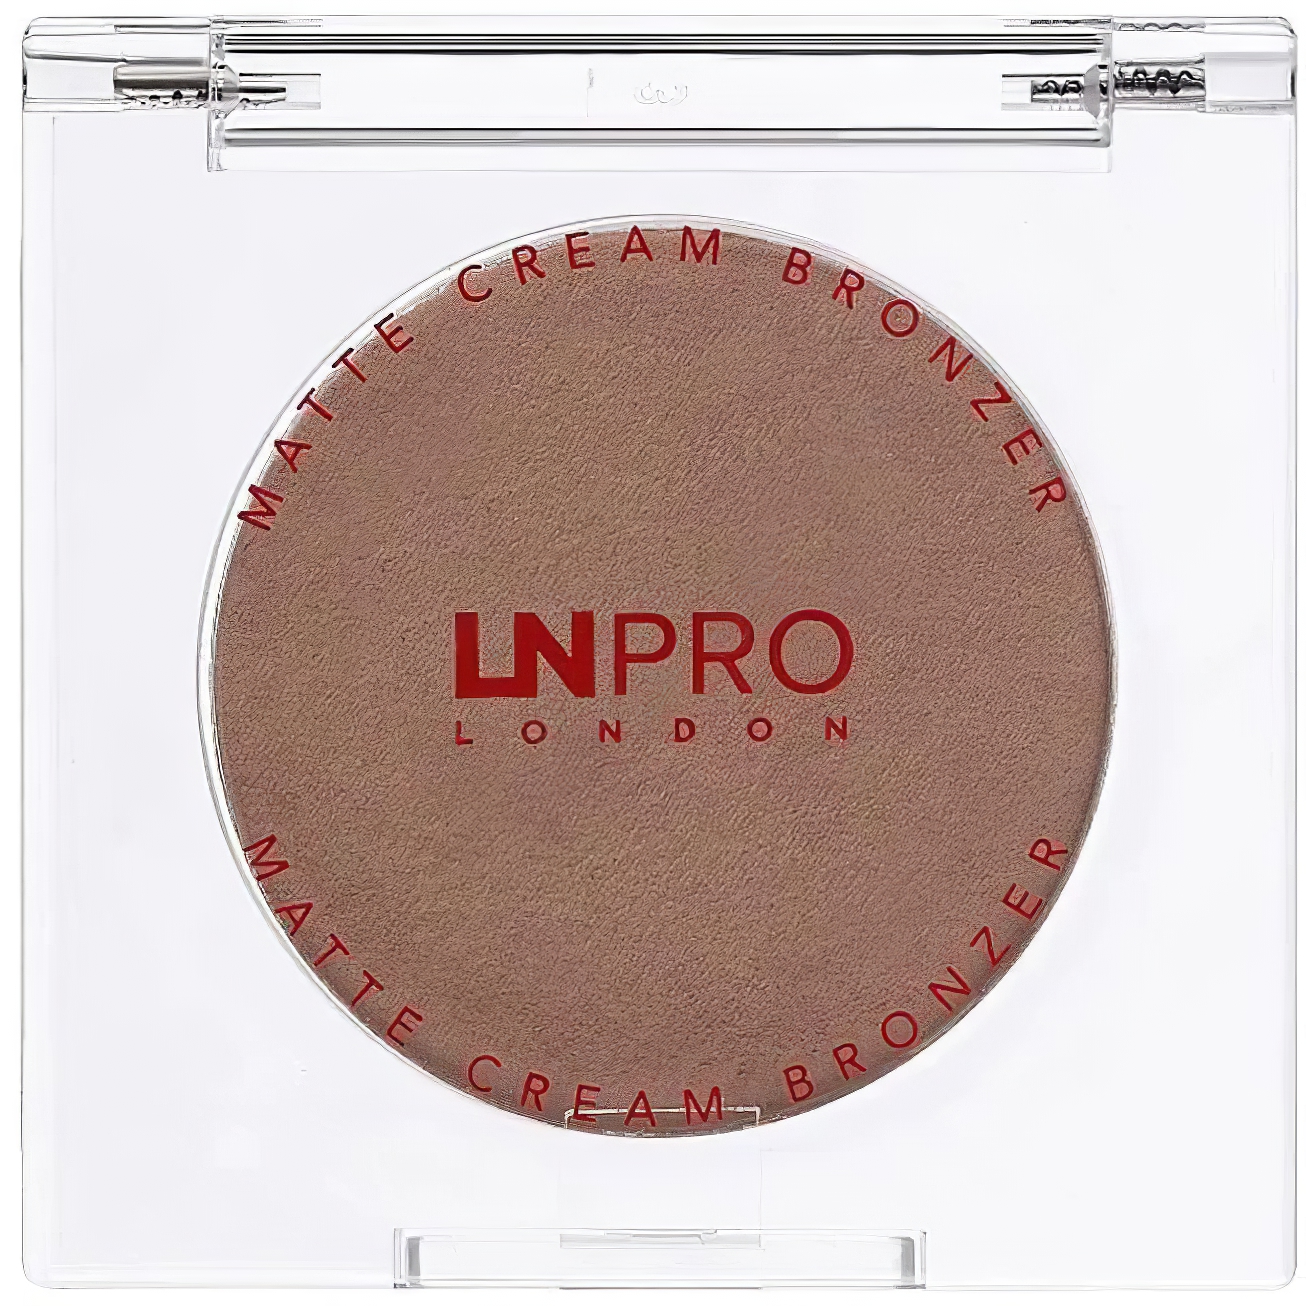 Кремовый бронзер для лица LN Pro Matte Cream Bronzer тон 101, 2.5 г - фото 4